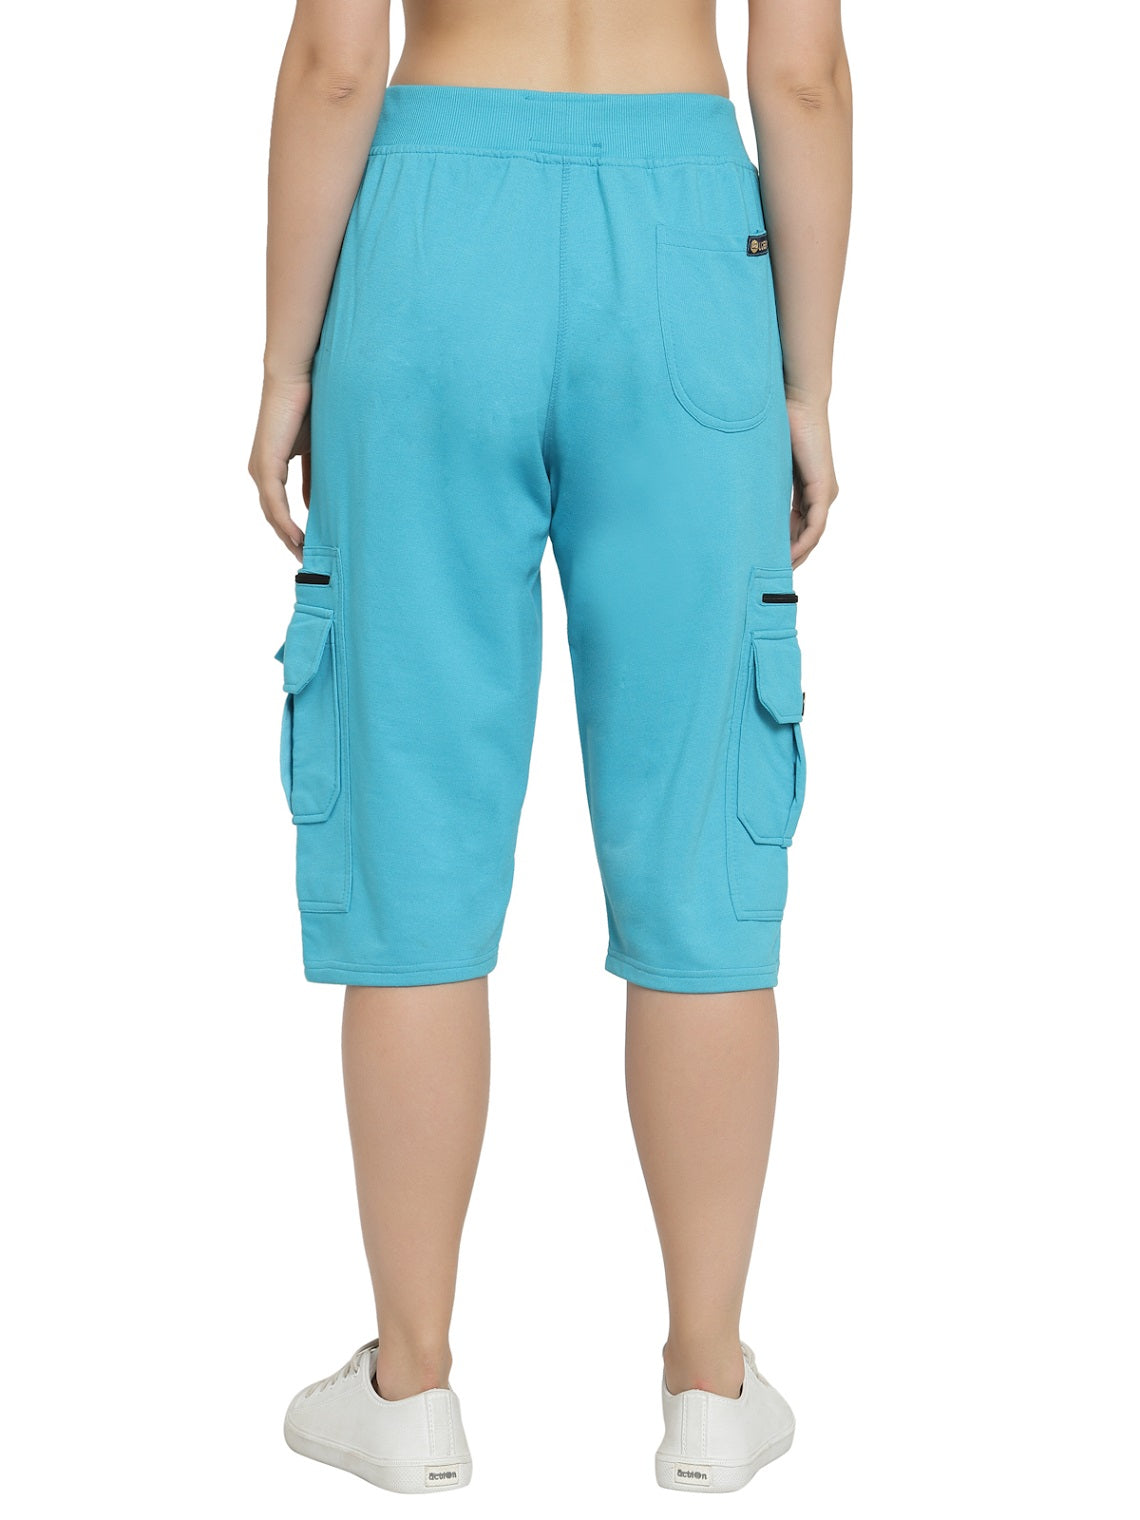 Women's Cargo Capri Shorts With 9 Zippered Pockets